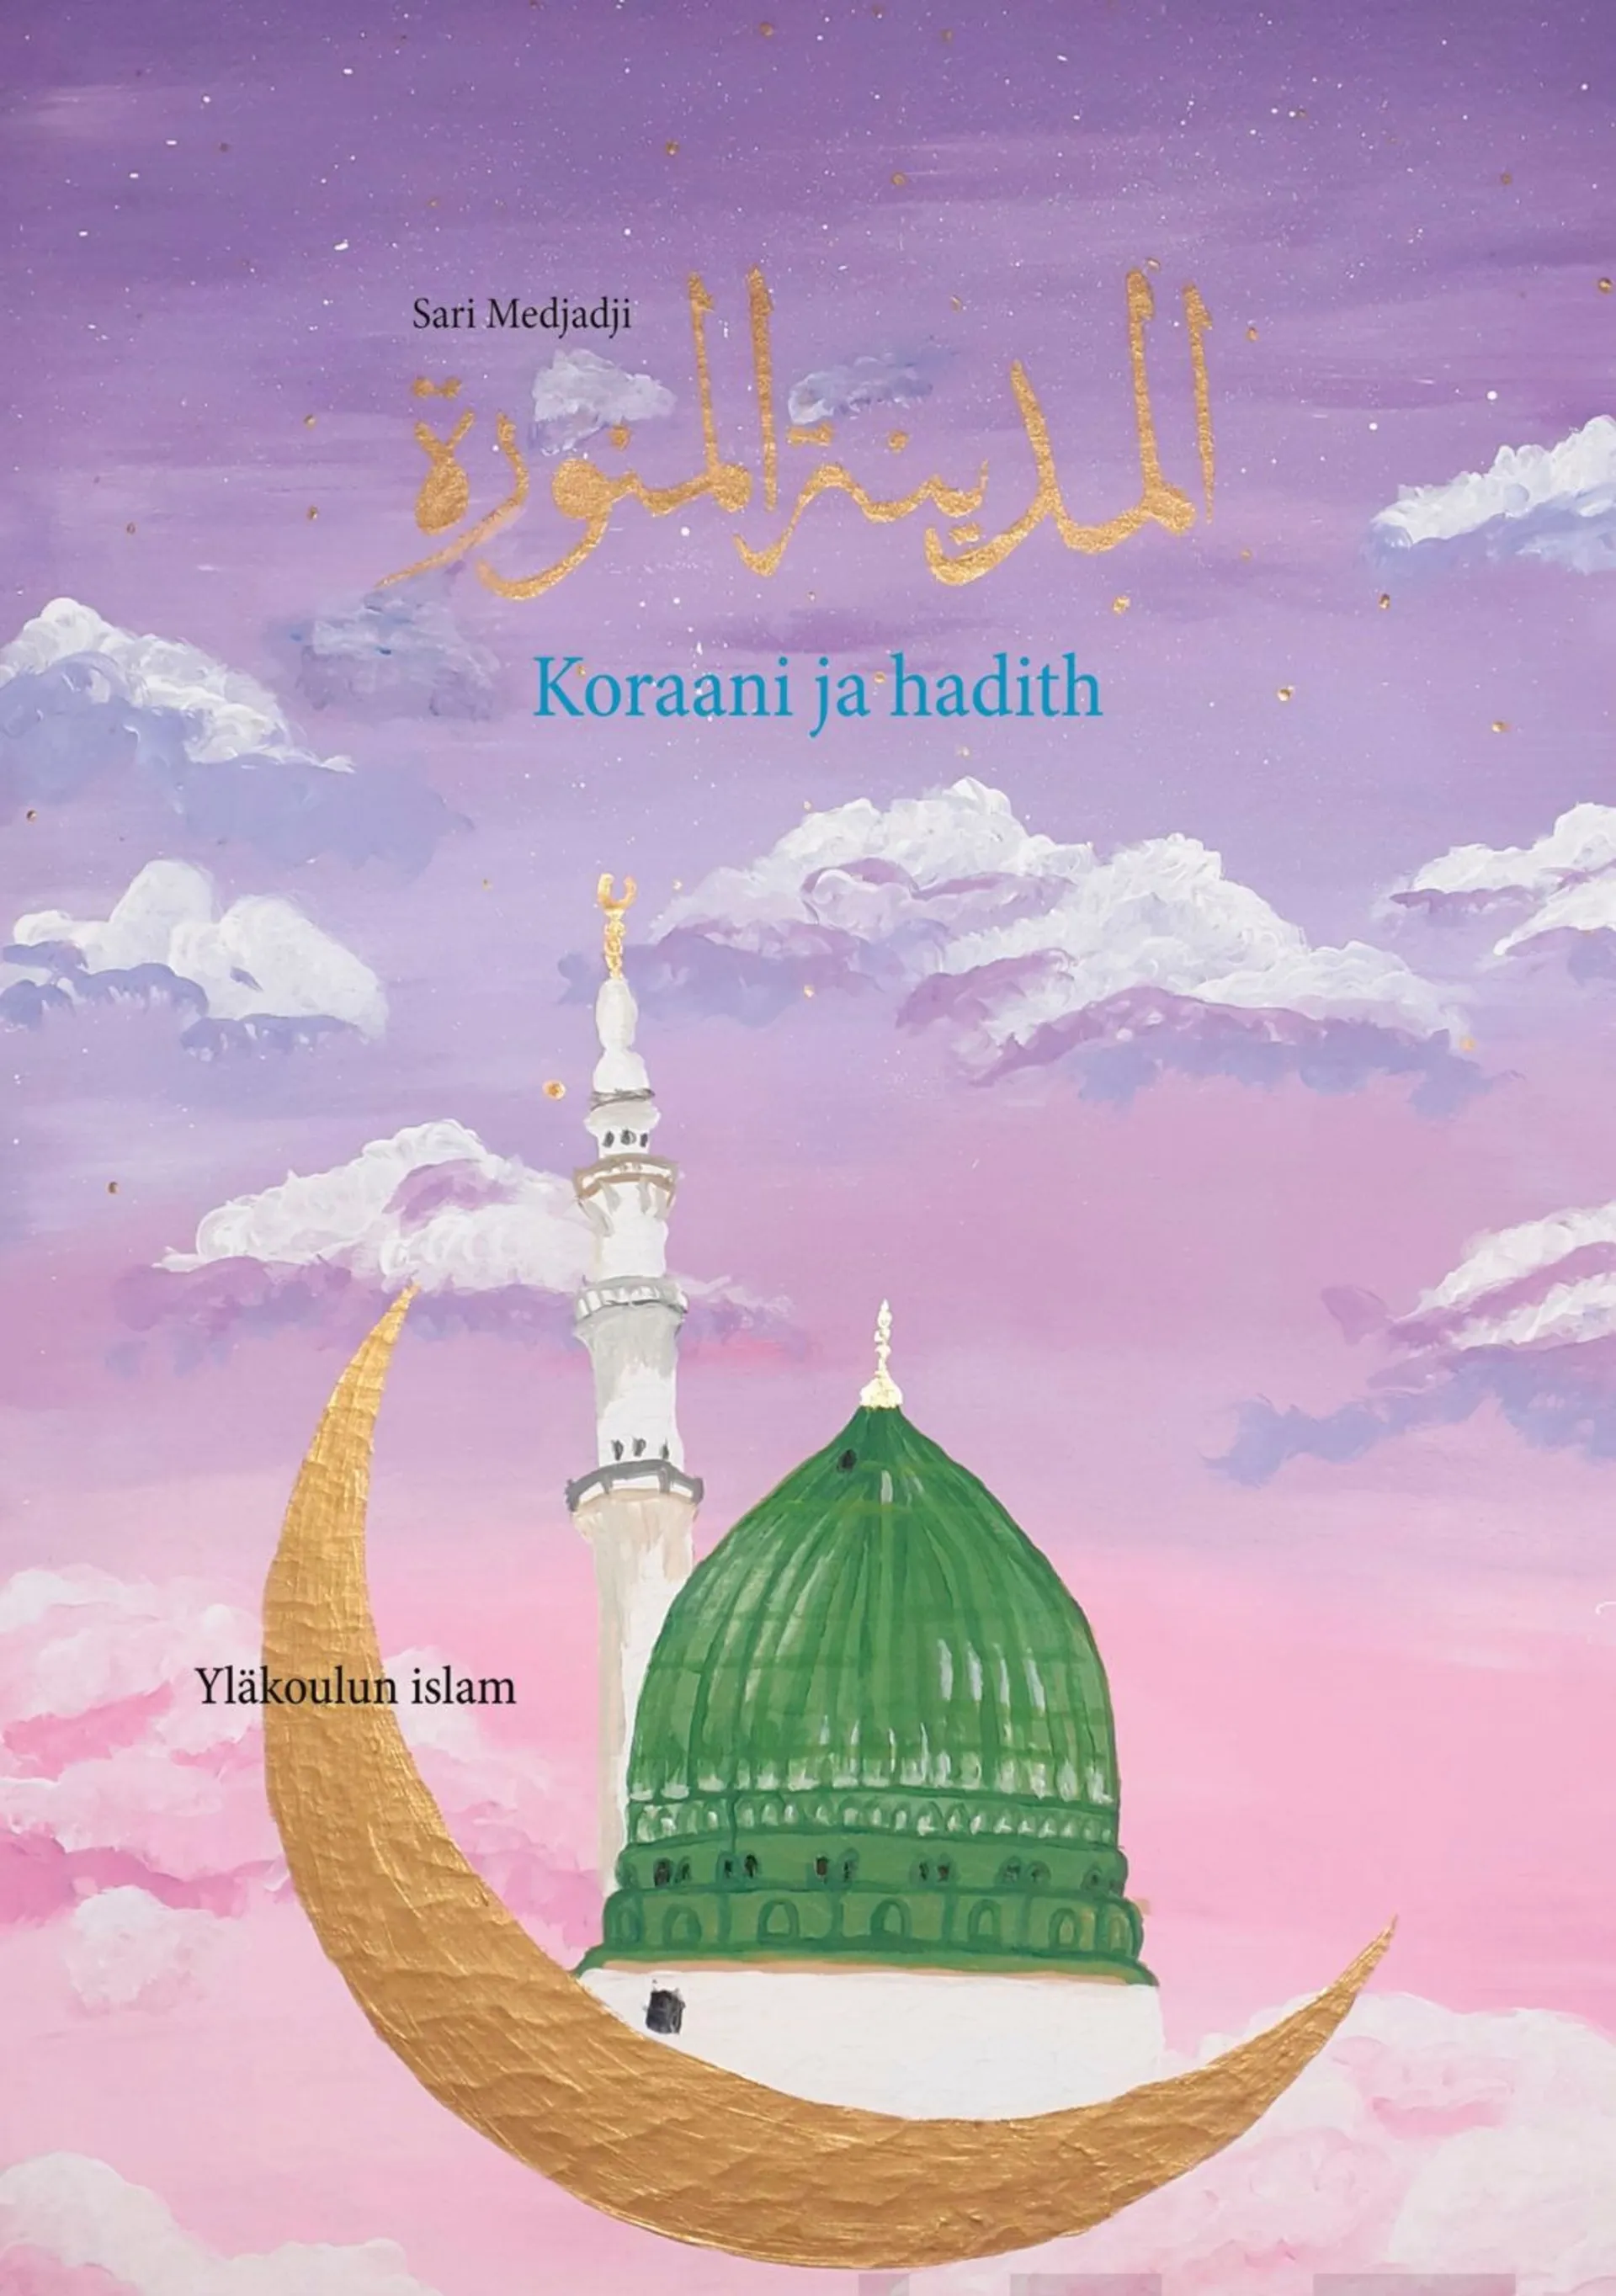 Medjadji, Koraani ja hadith - Yläkoulun islam